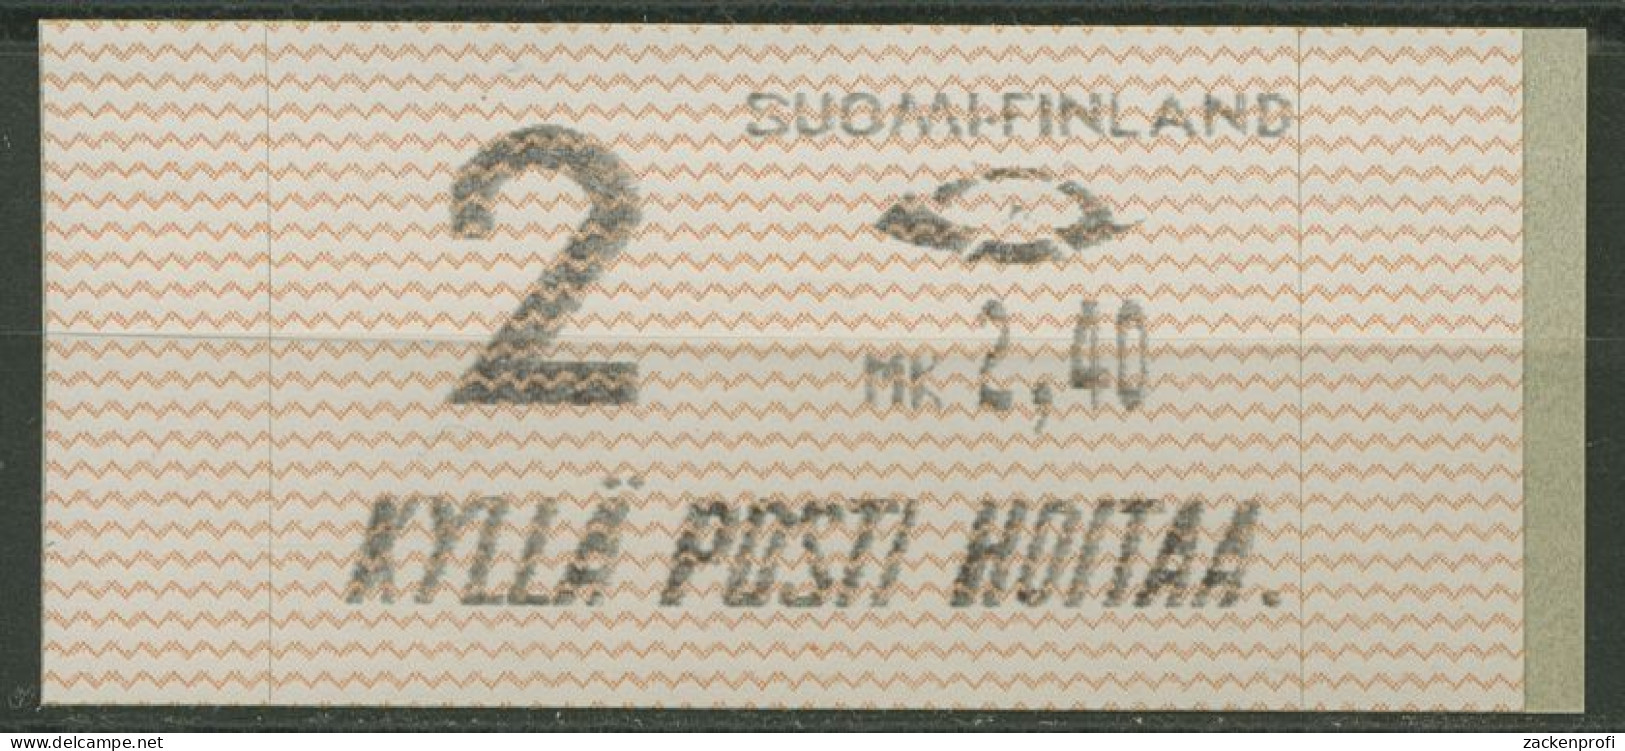 Finnland Automatenmarken 1991 MK 2,40 Einzelwert, ATM 10.1 Z2 Postfrisch - Viñetas De Franqueo [ATM]